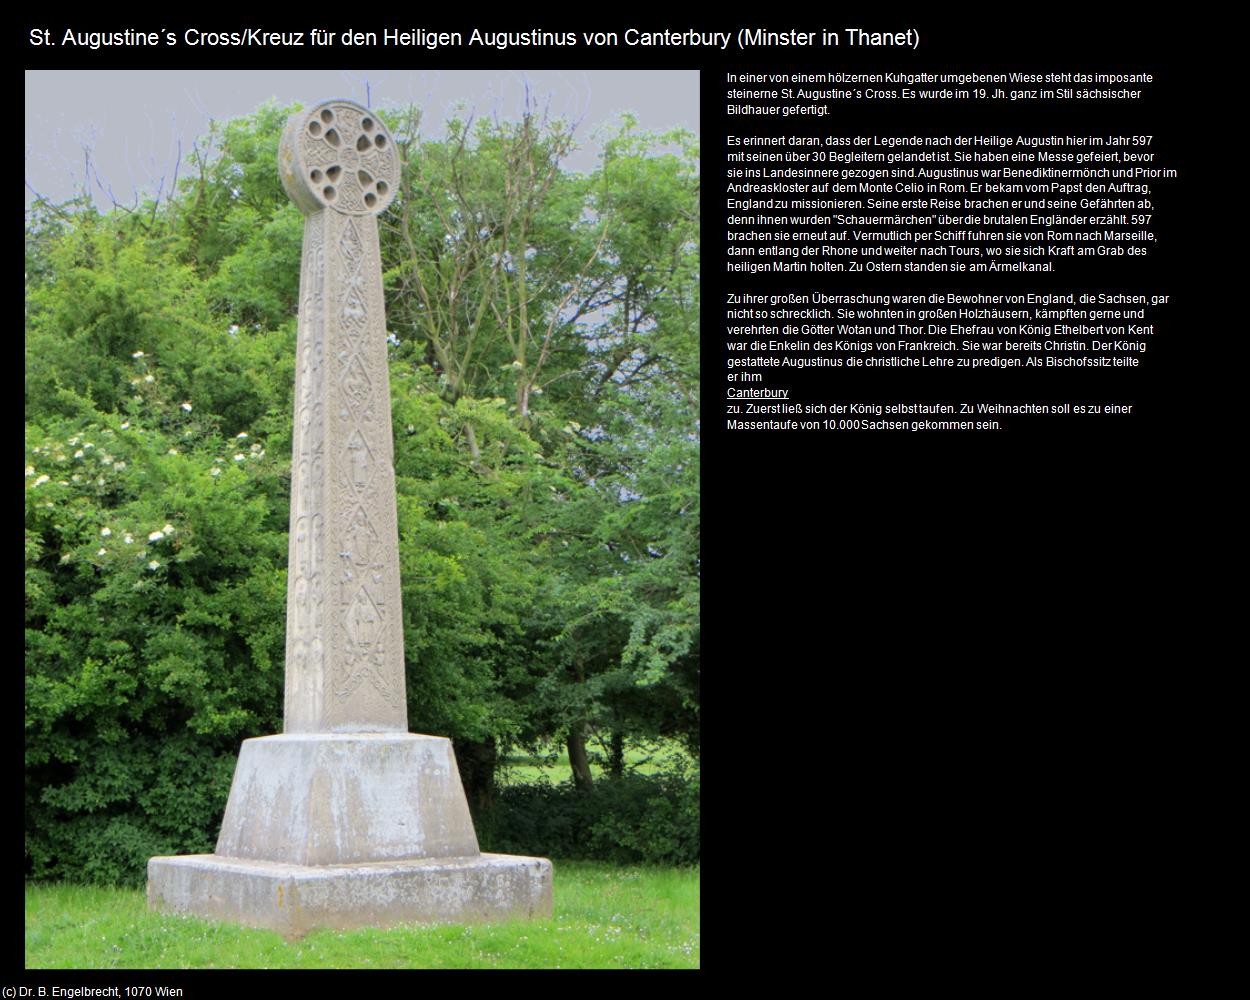 St. Augustine‘s Cross/Kreuz (Minster in Thanet, England) in Kulturatlas-ENGLAND und WALES(c)B.Engelbrecht